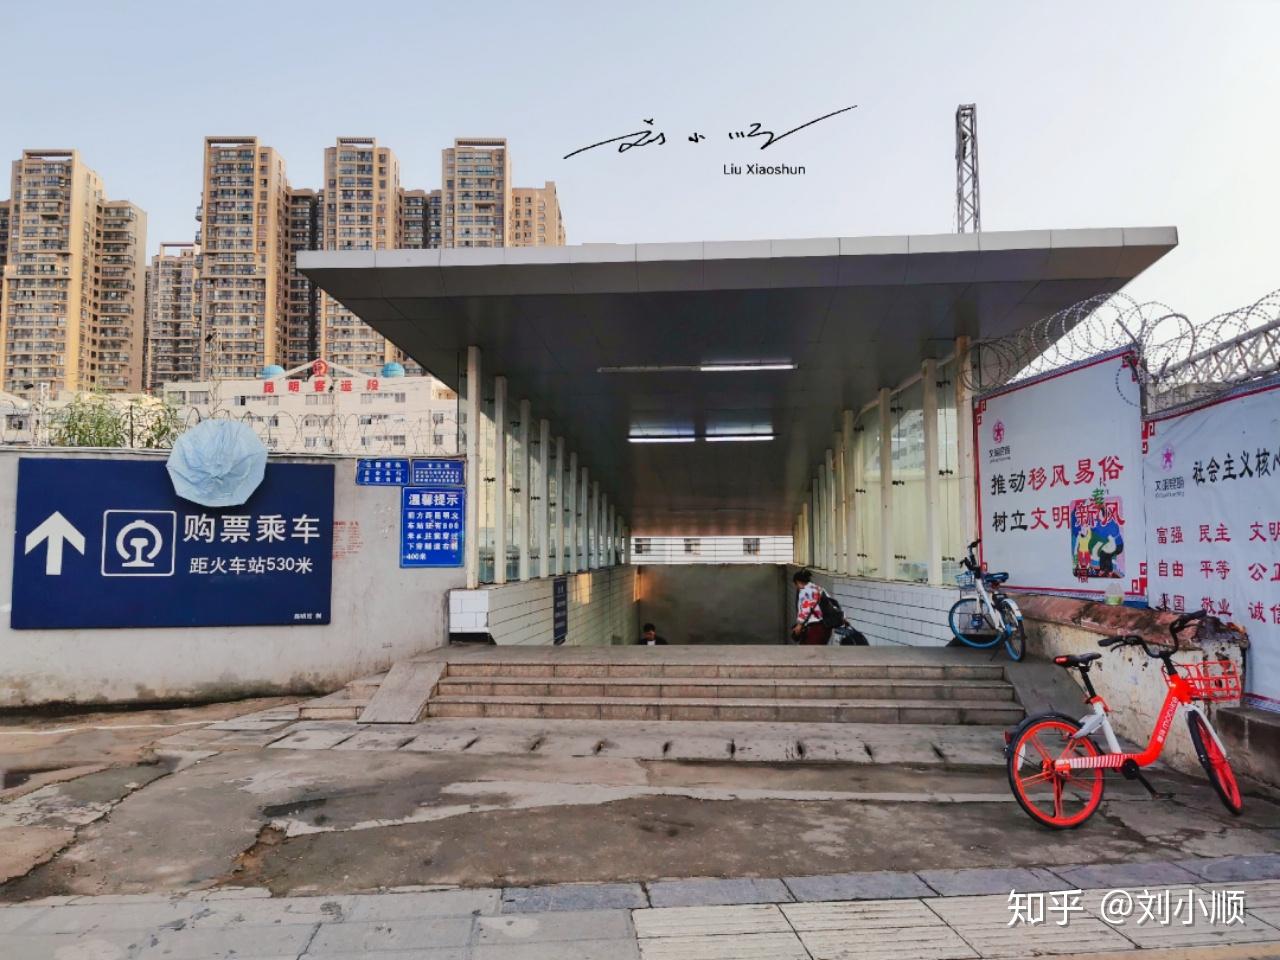 2022云南铁路博物馆游玩攻略,云南铁路博物馆位于原火车站...【去哪儿攻略】